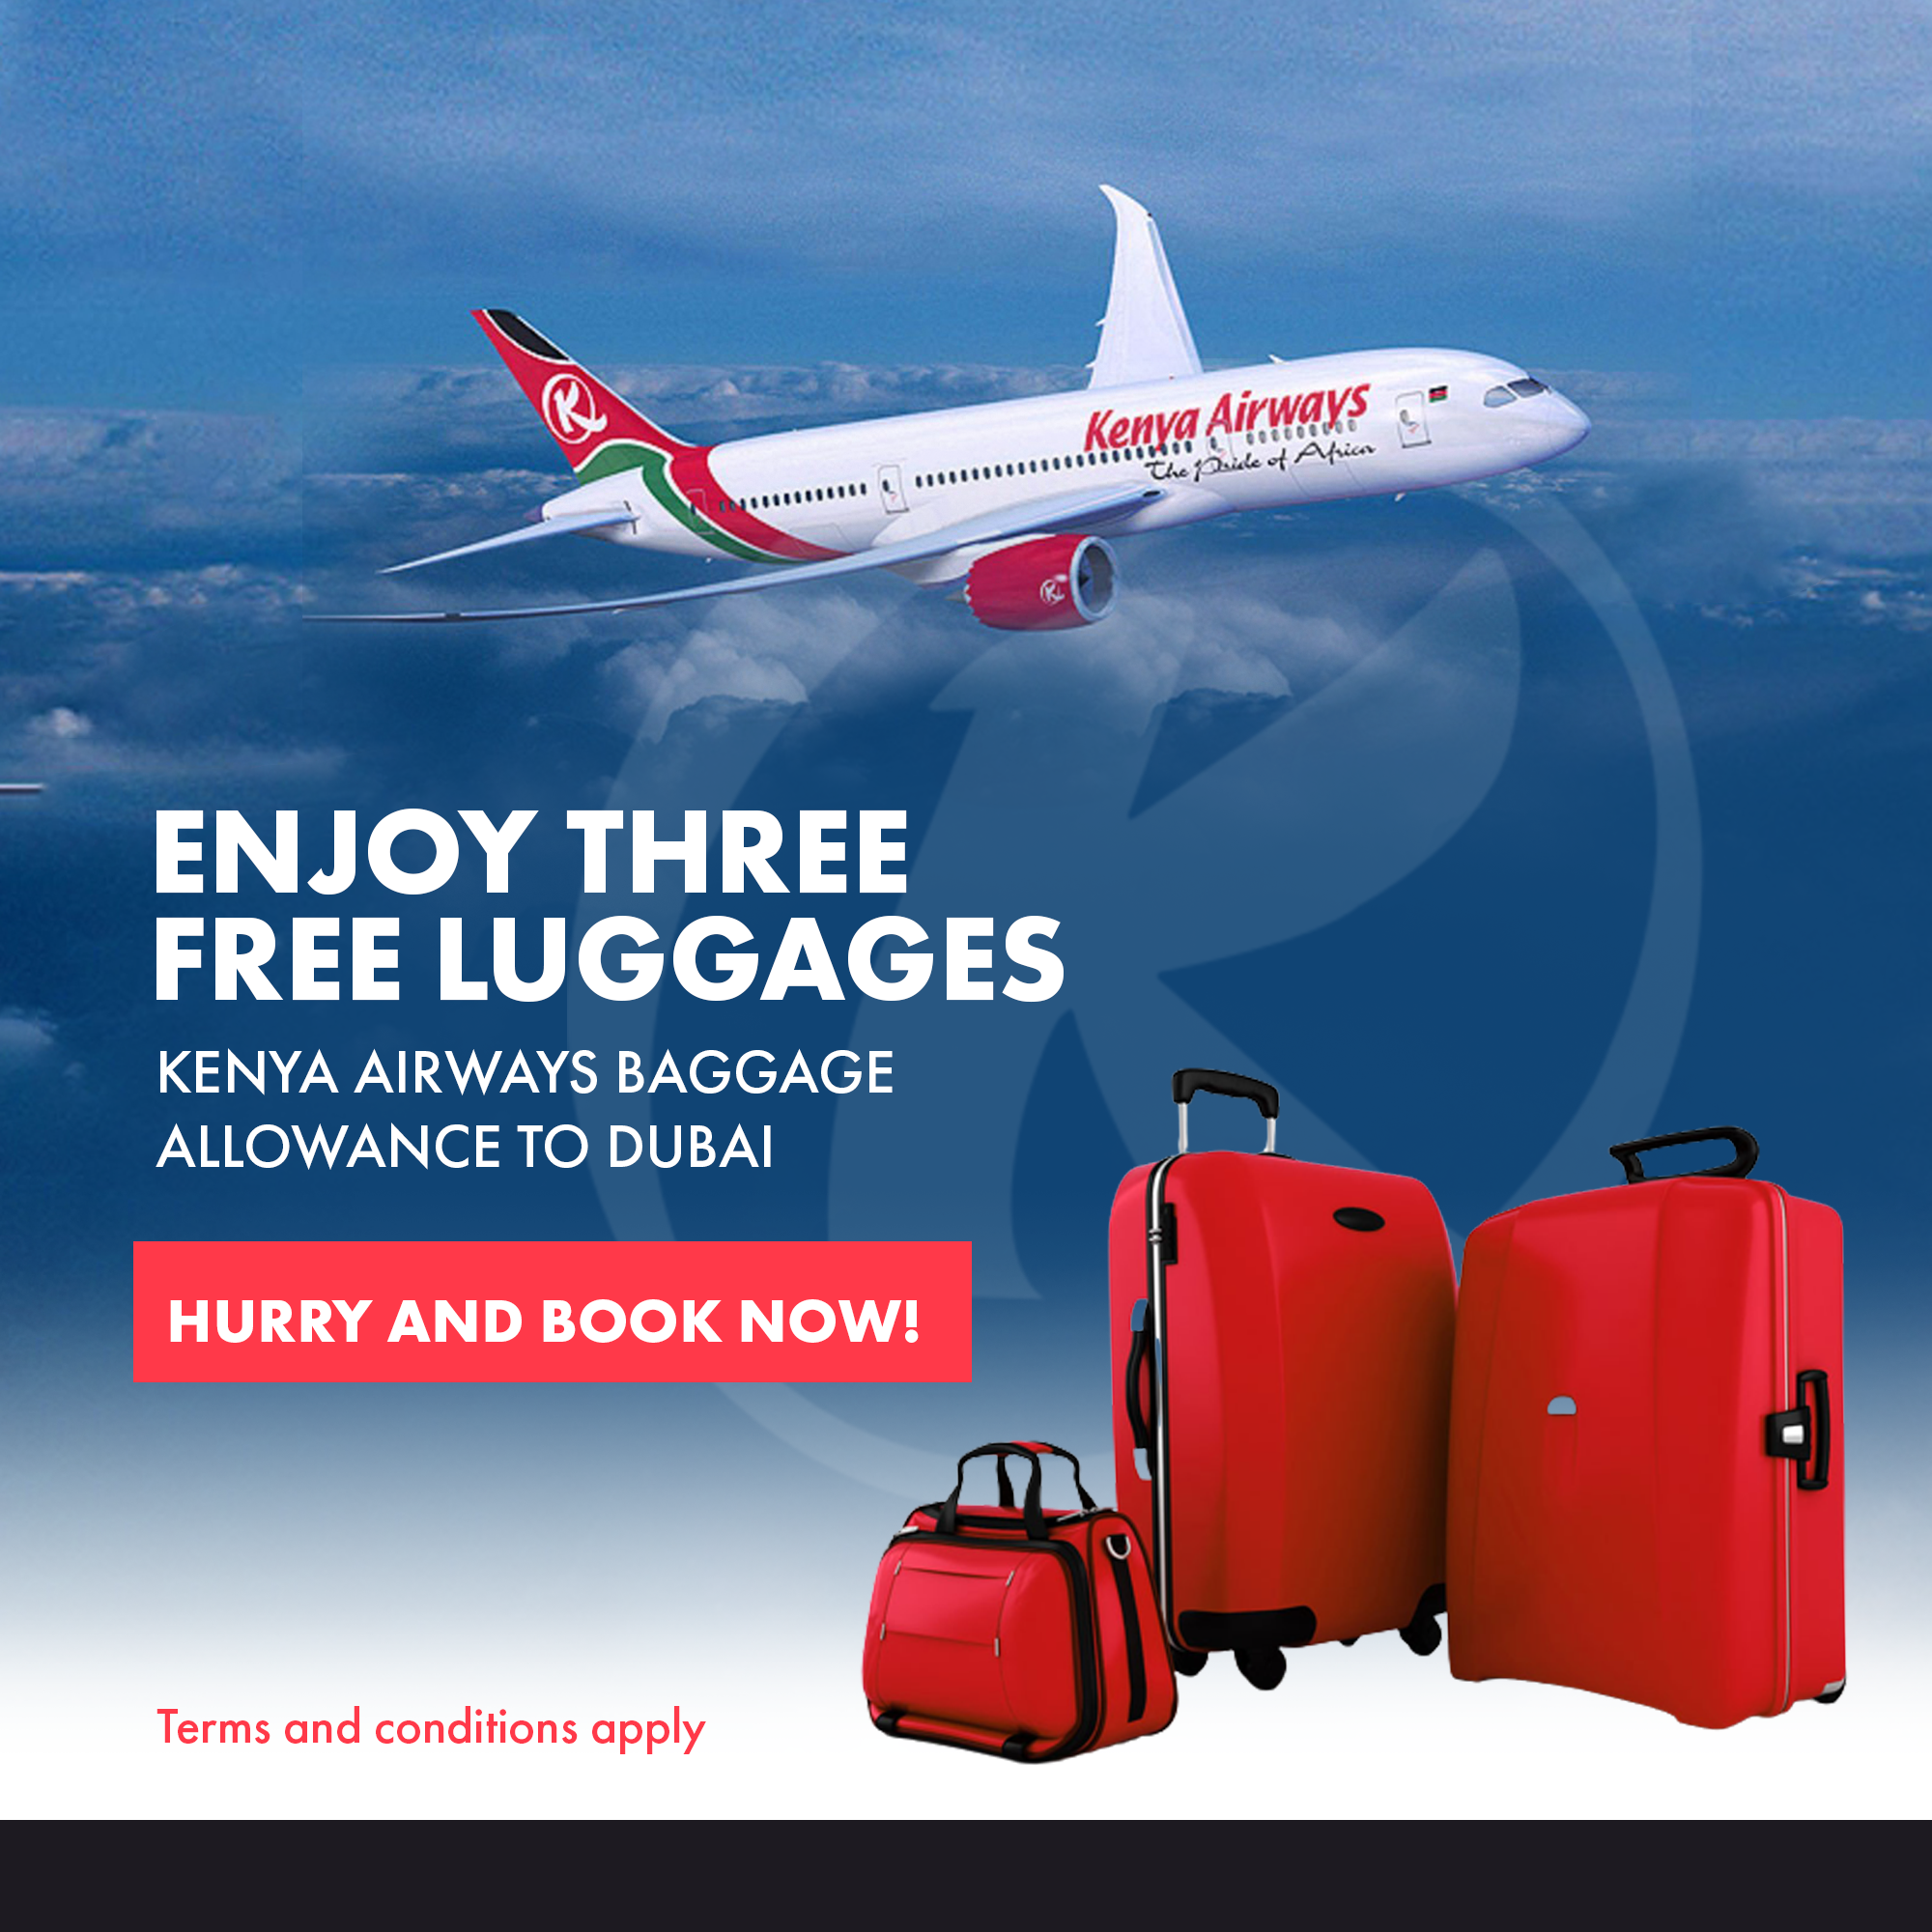 Enjoy three free luggage allowances on Kenya Airways to Dubai